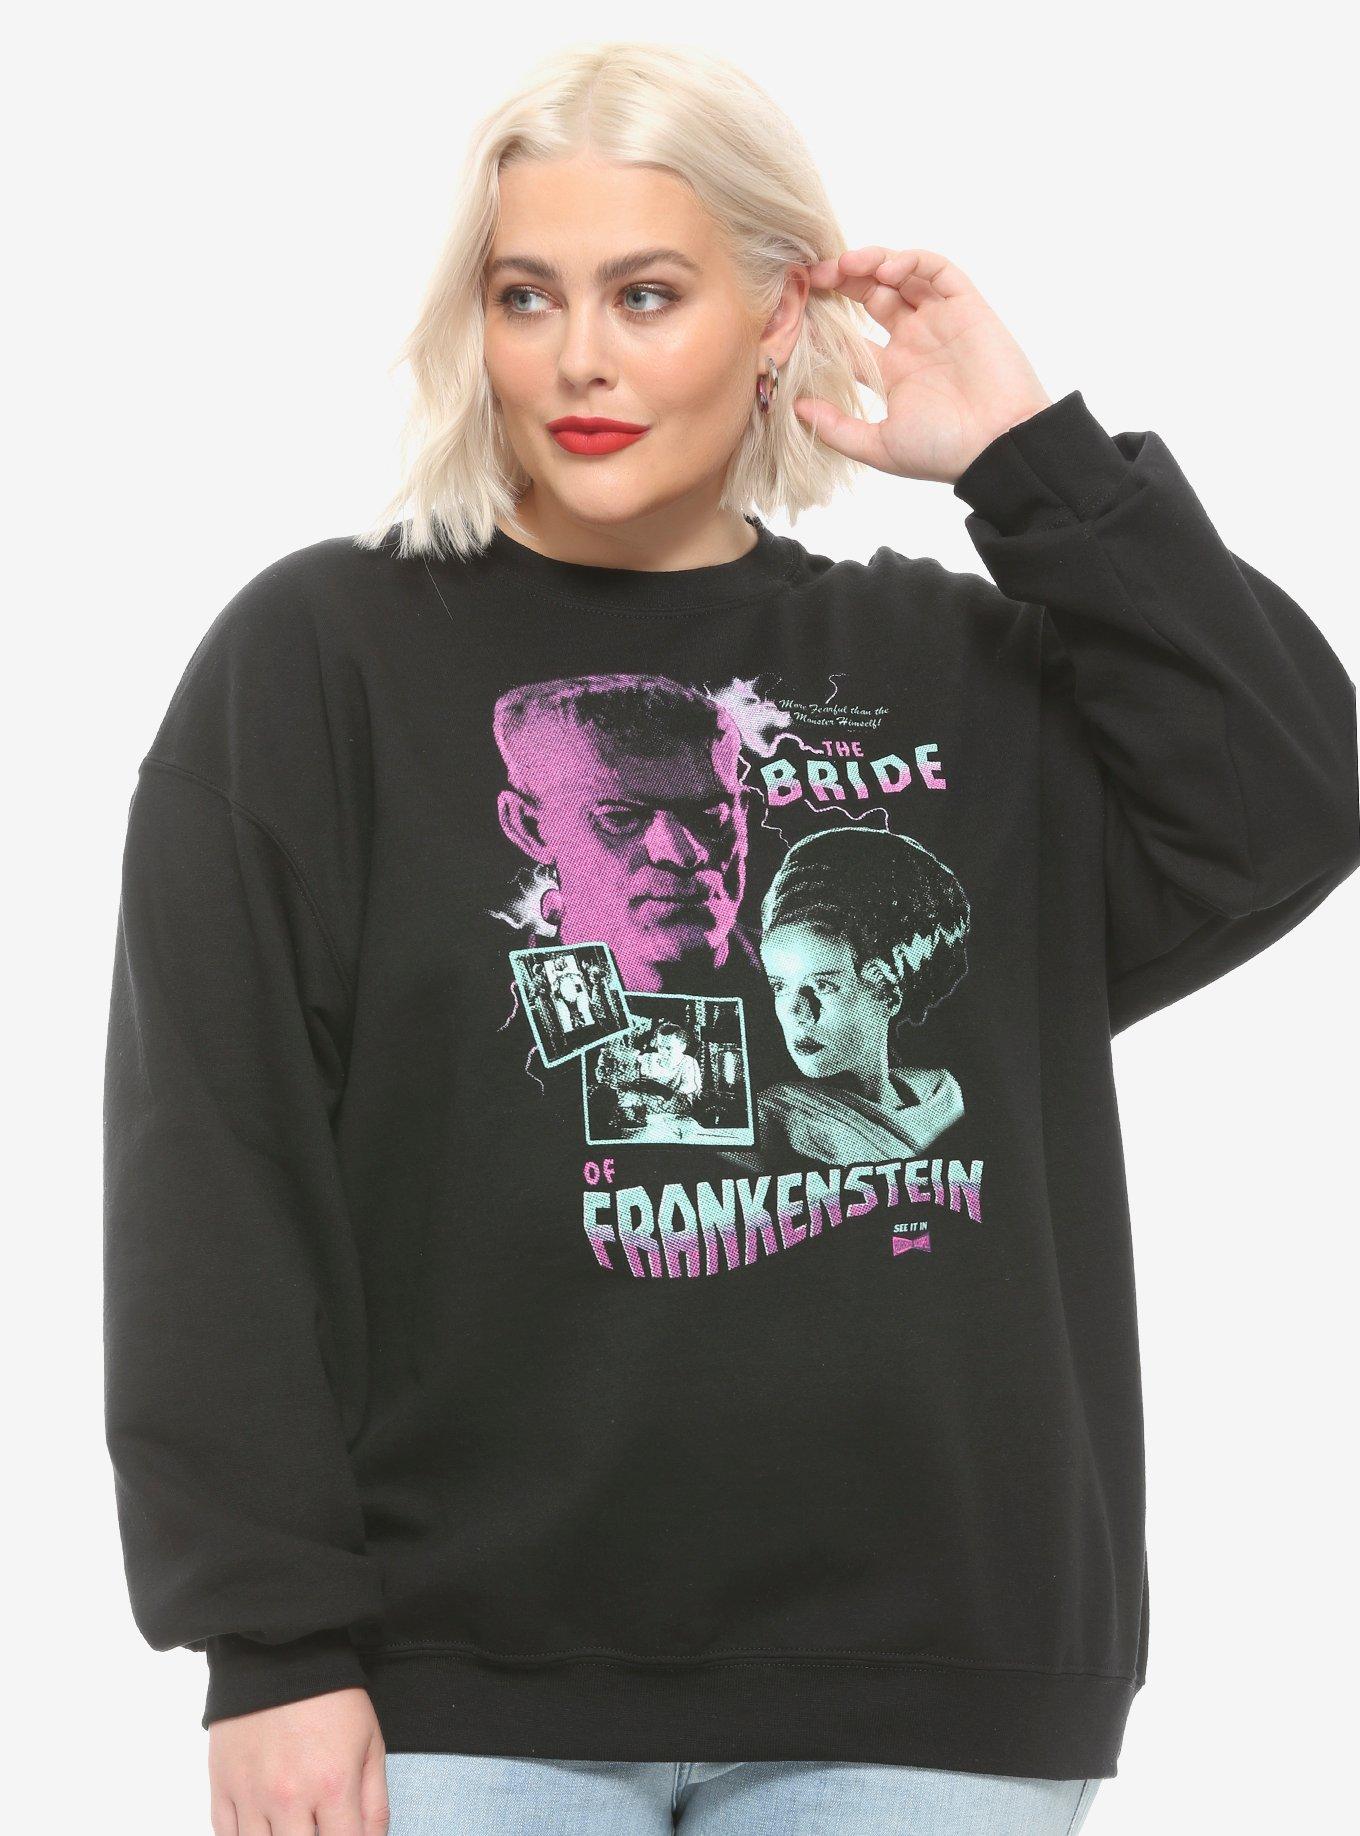 Universal Monsters The Bride Of Frankenstein Poster Girls Sweatshirt ...